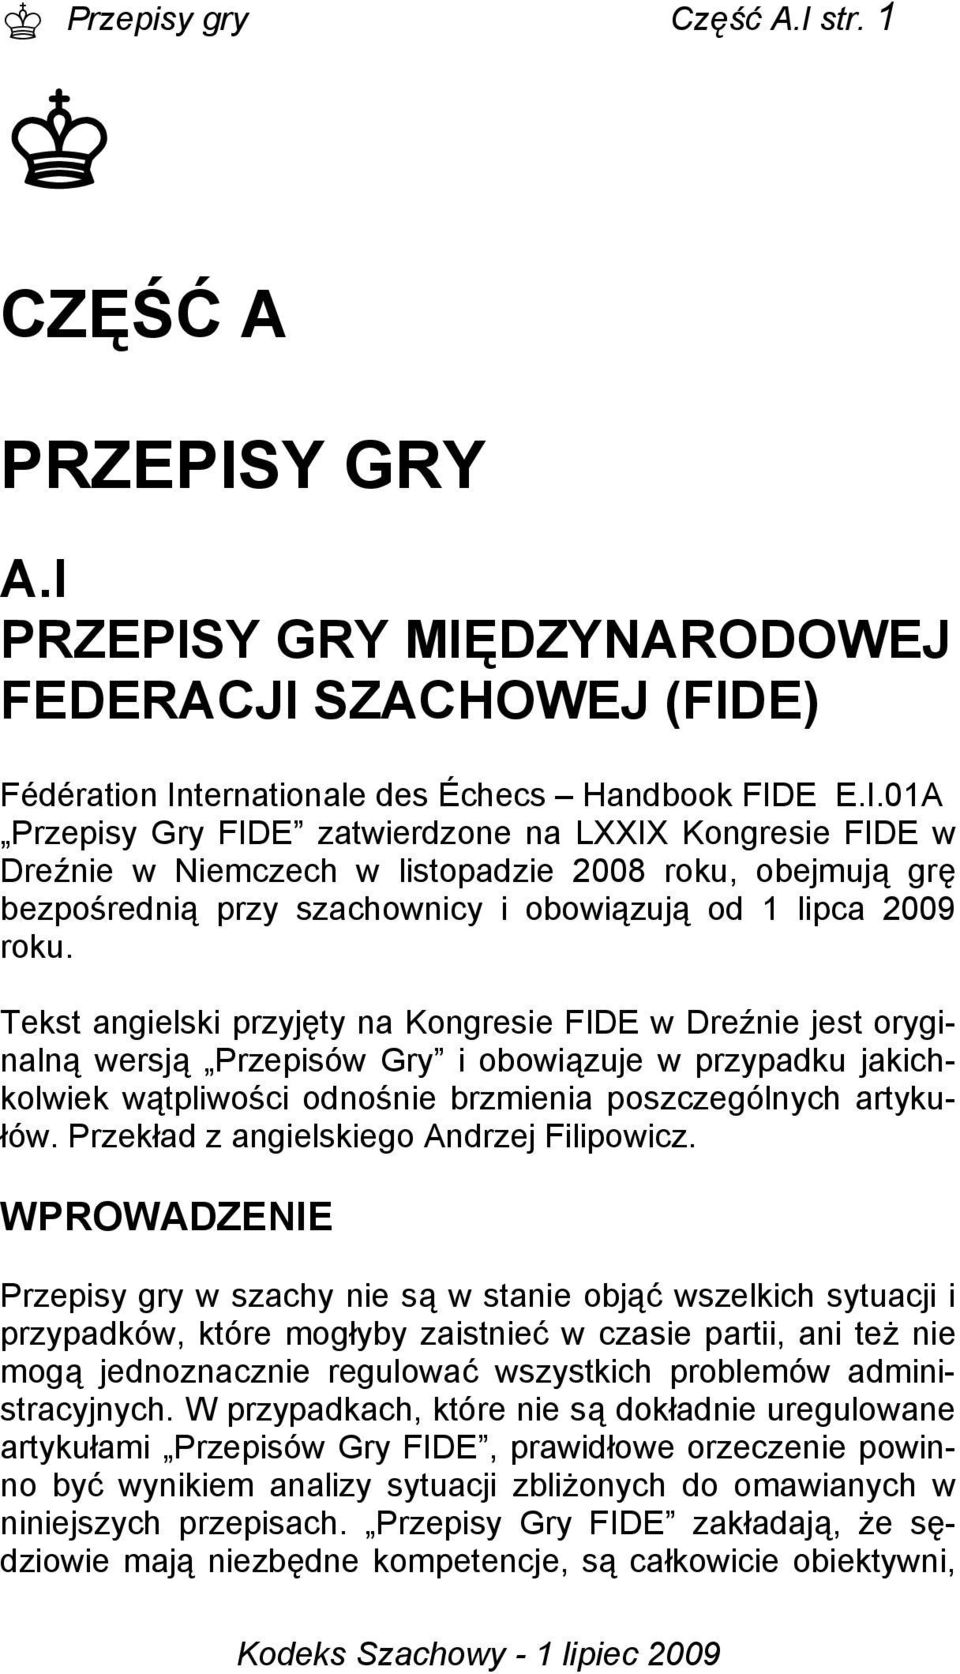 Y GRY A.I PRZEPISY GRY MIĘDZYNARODOWEJ FEDERACJI SZACHOWEJ (FIDE) Fédération Internationale des Échecs Handbook FIDE E.I.01A Przepisy Gry FIDE zatwierdzone na LXXIX Kongresie FIDE w Dreźnie w Niemczech w listopadzie 2008 roku, obejmują grę bezpośrednią przy szachownicy i obowiązują od 1 lipca 2009 roku.